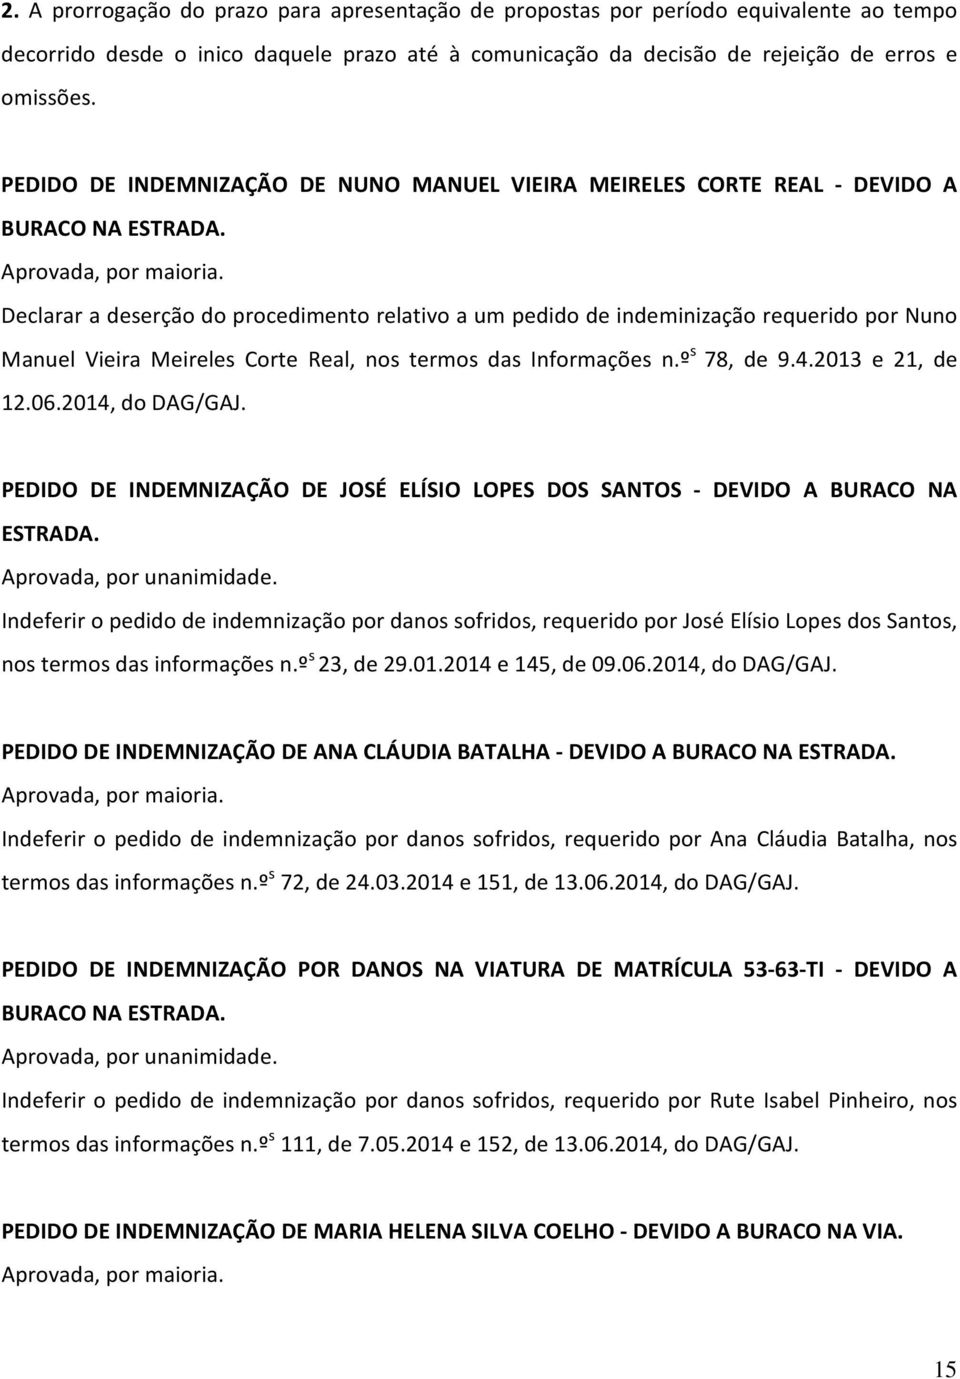 Declarar a deserção do procedimento relativo a um pedido de indeminização requerido por Nuno Manuel Vieira Meireles Corte Real, nos termos das Informações n.º s 78, de 9.4.2013 e 21, de 12.06.